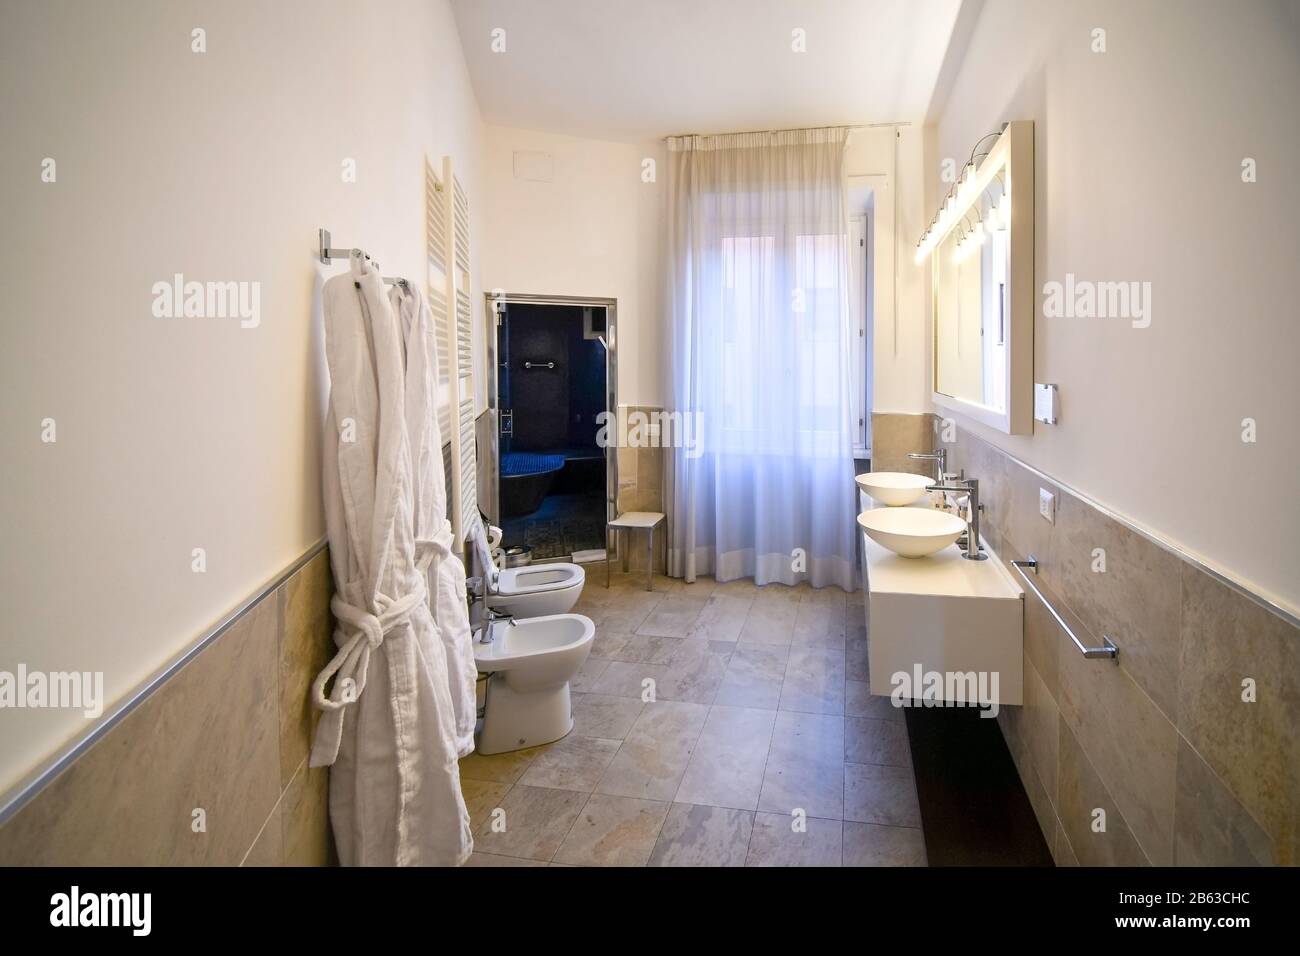 Großes Badezimmer mit Doppelwaschbecken, bidet, Hängegewänder, toilette und großer Duschkabine in einem italienischen Hotel in Rom, Italien. Stockfoto